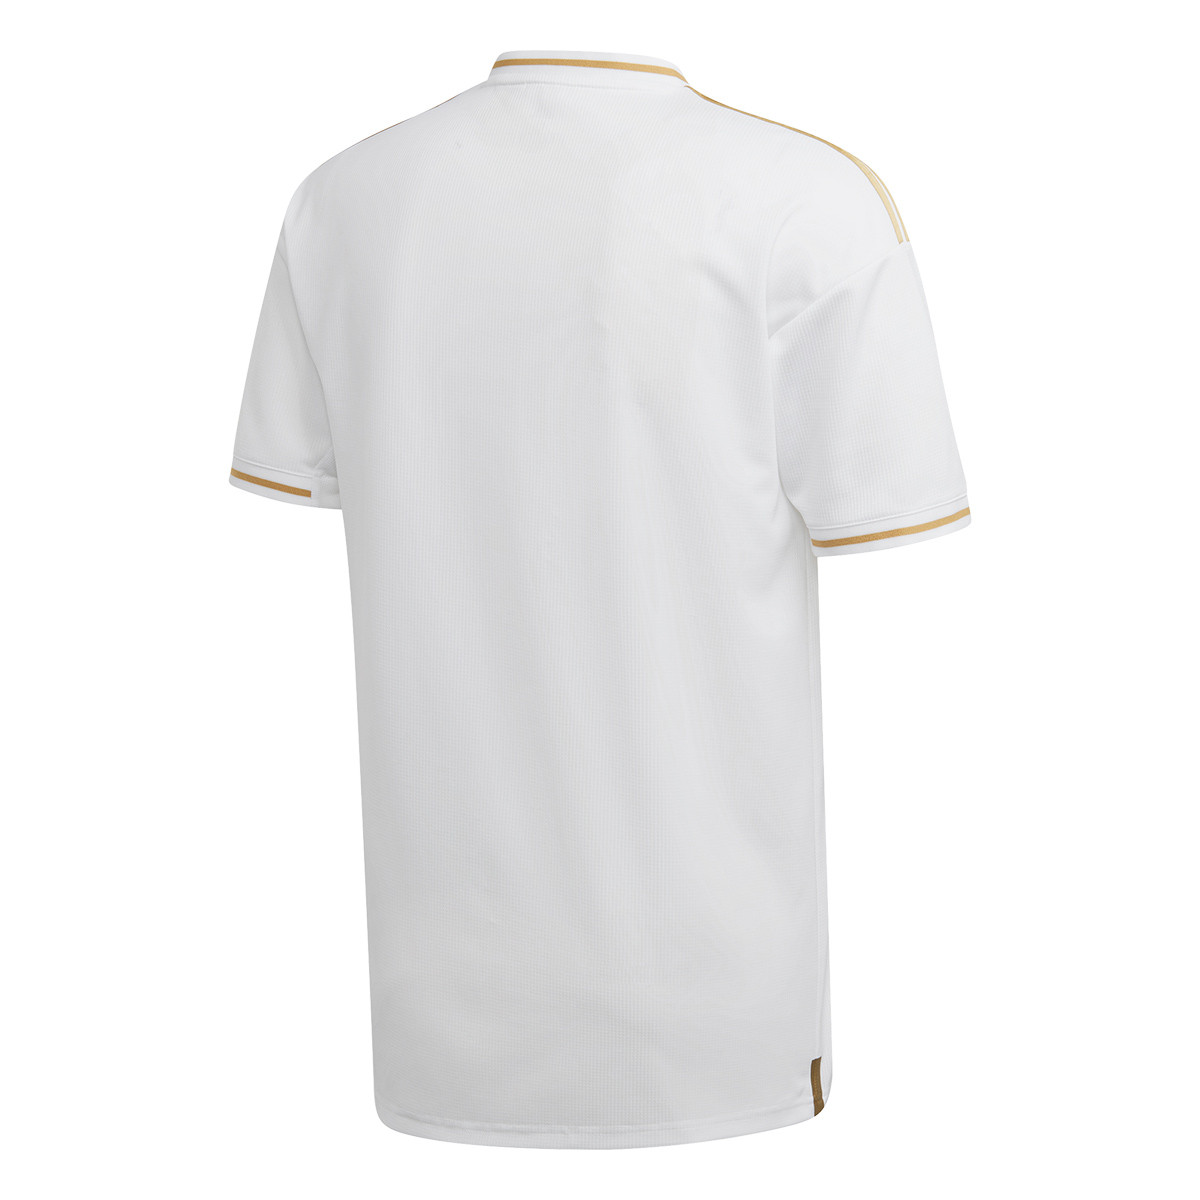 camisetas de futbol real madrid 2019